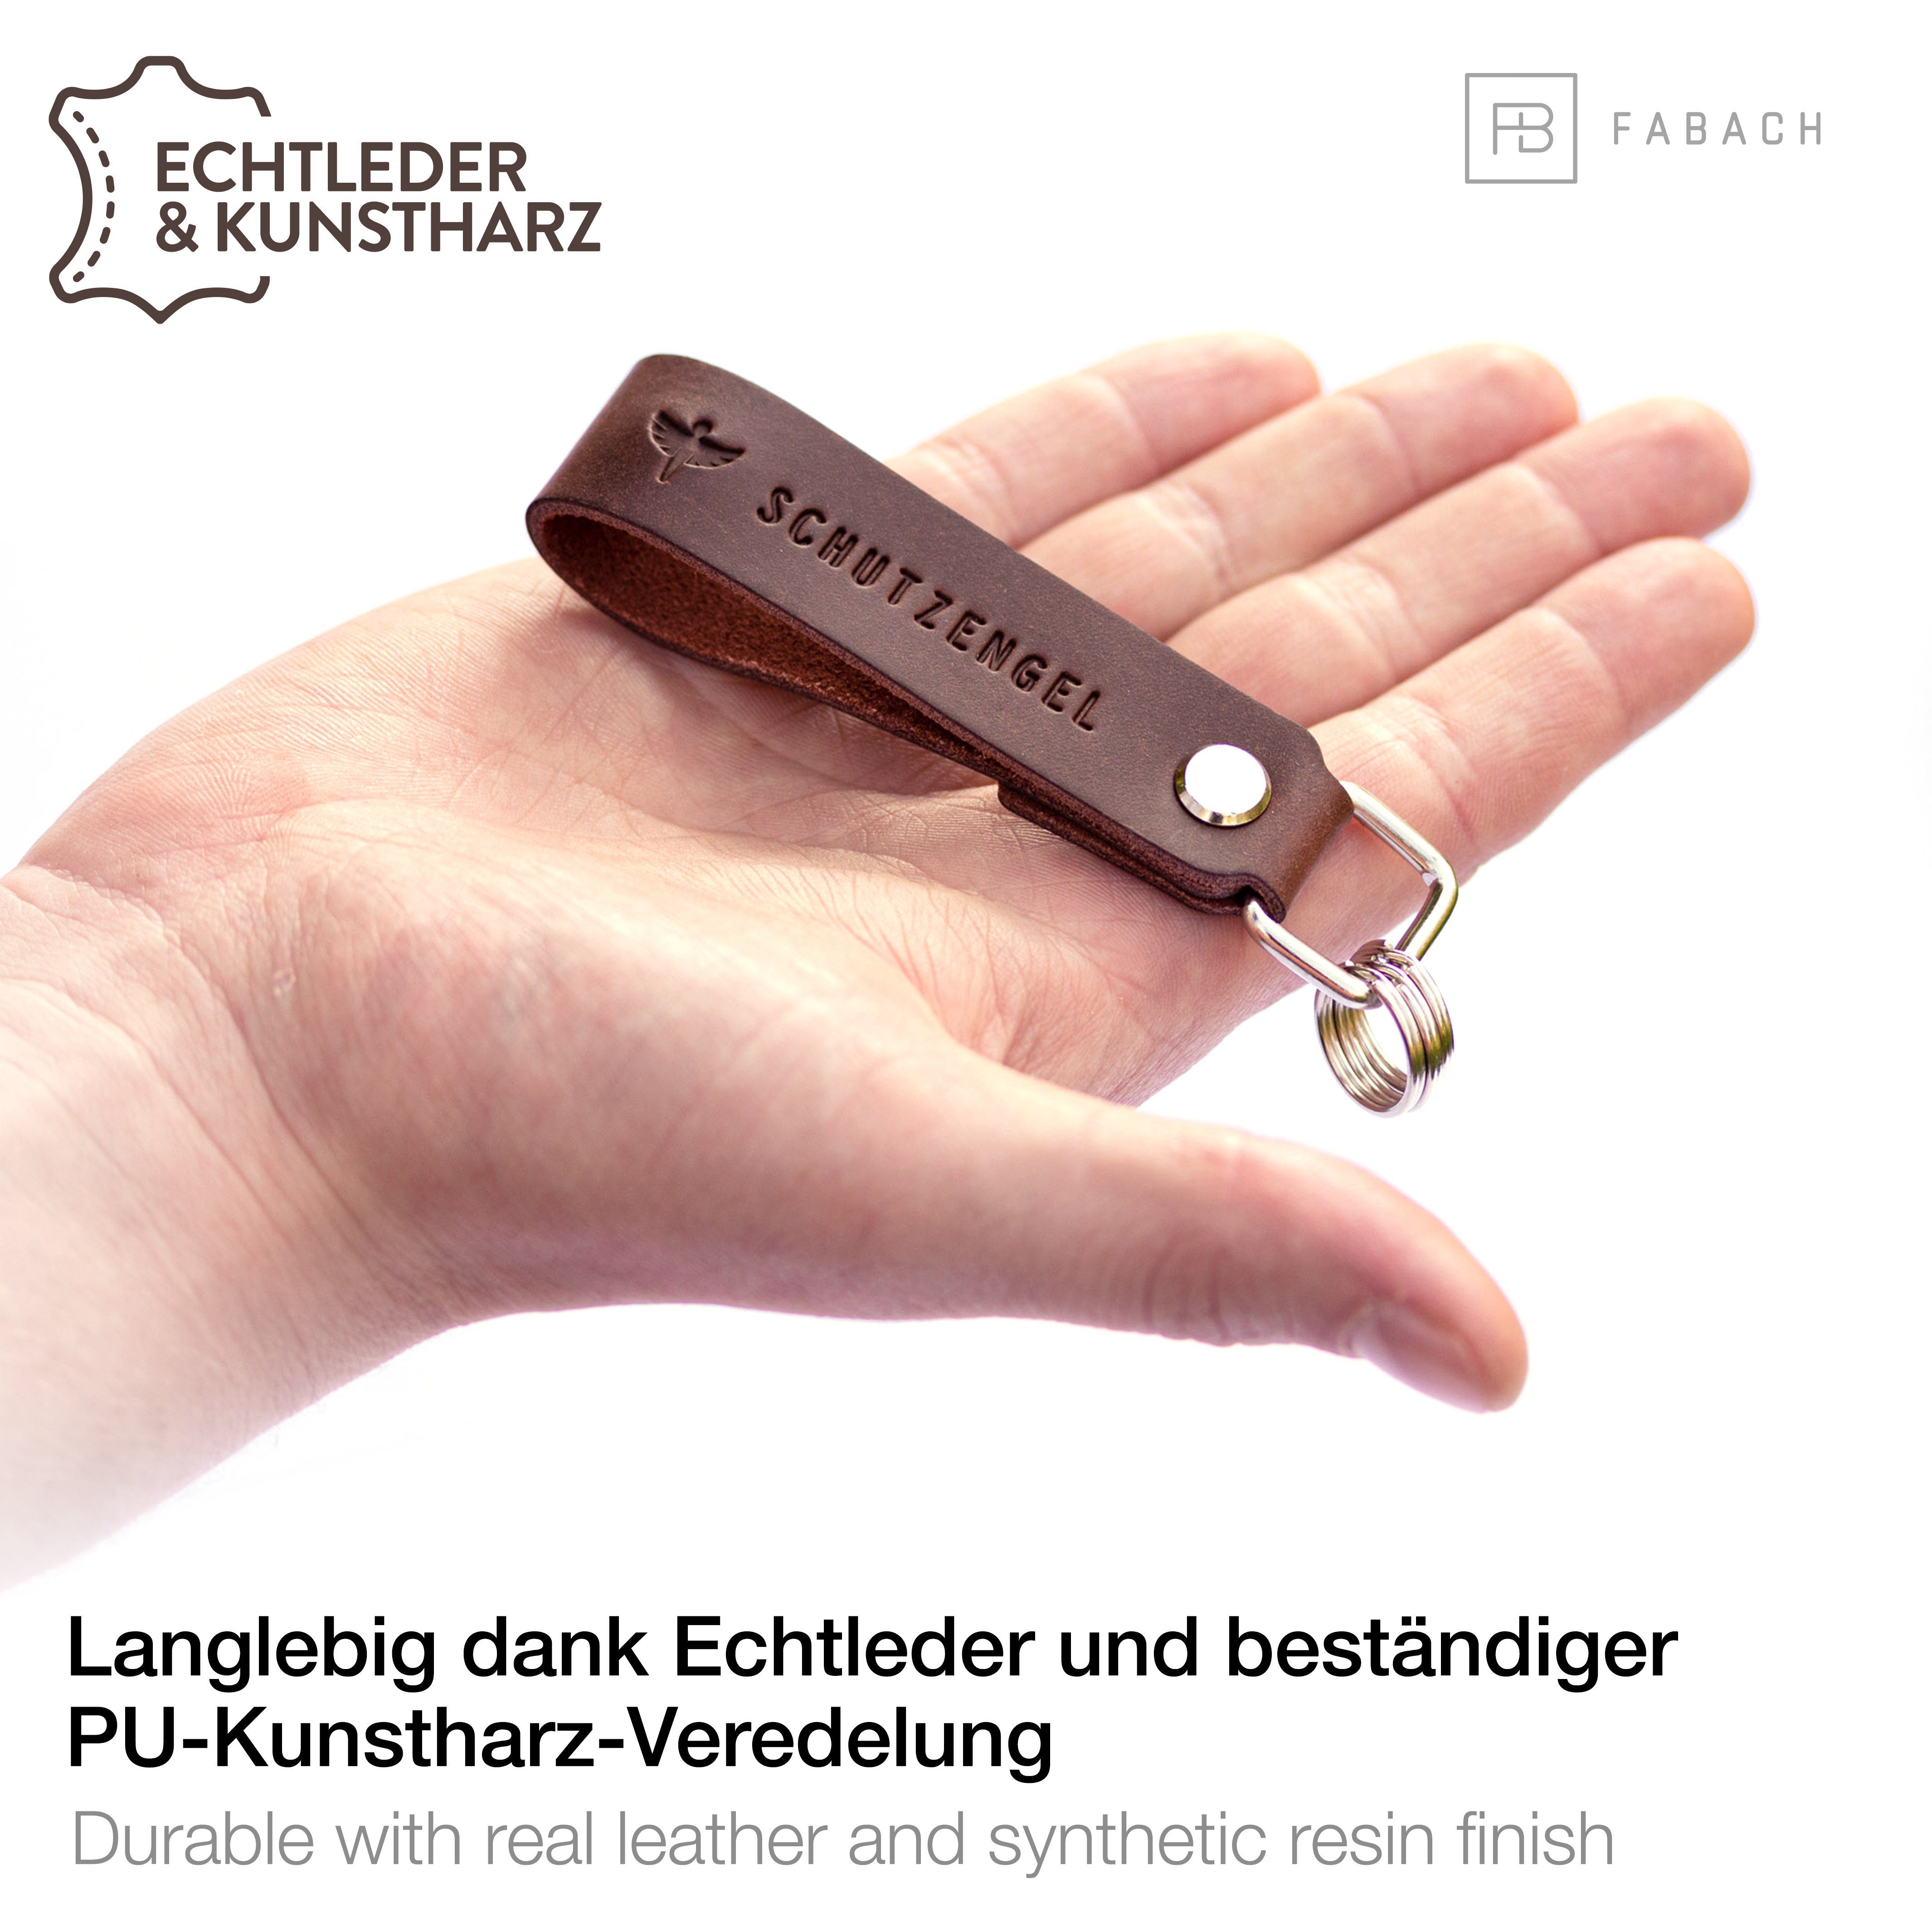 wechselbarem "Schutzengel" Anhänger Braun Leder mit FABACH Gravur Schlüsselanhänger - Schlüsselring